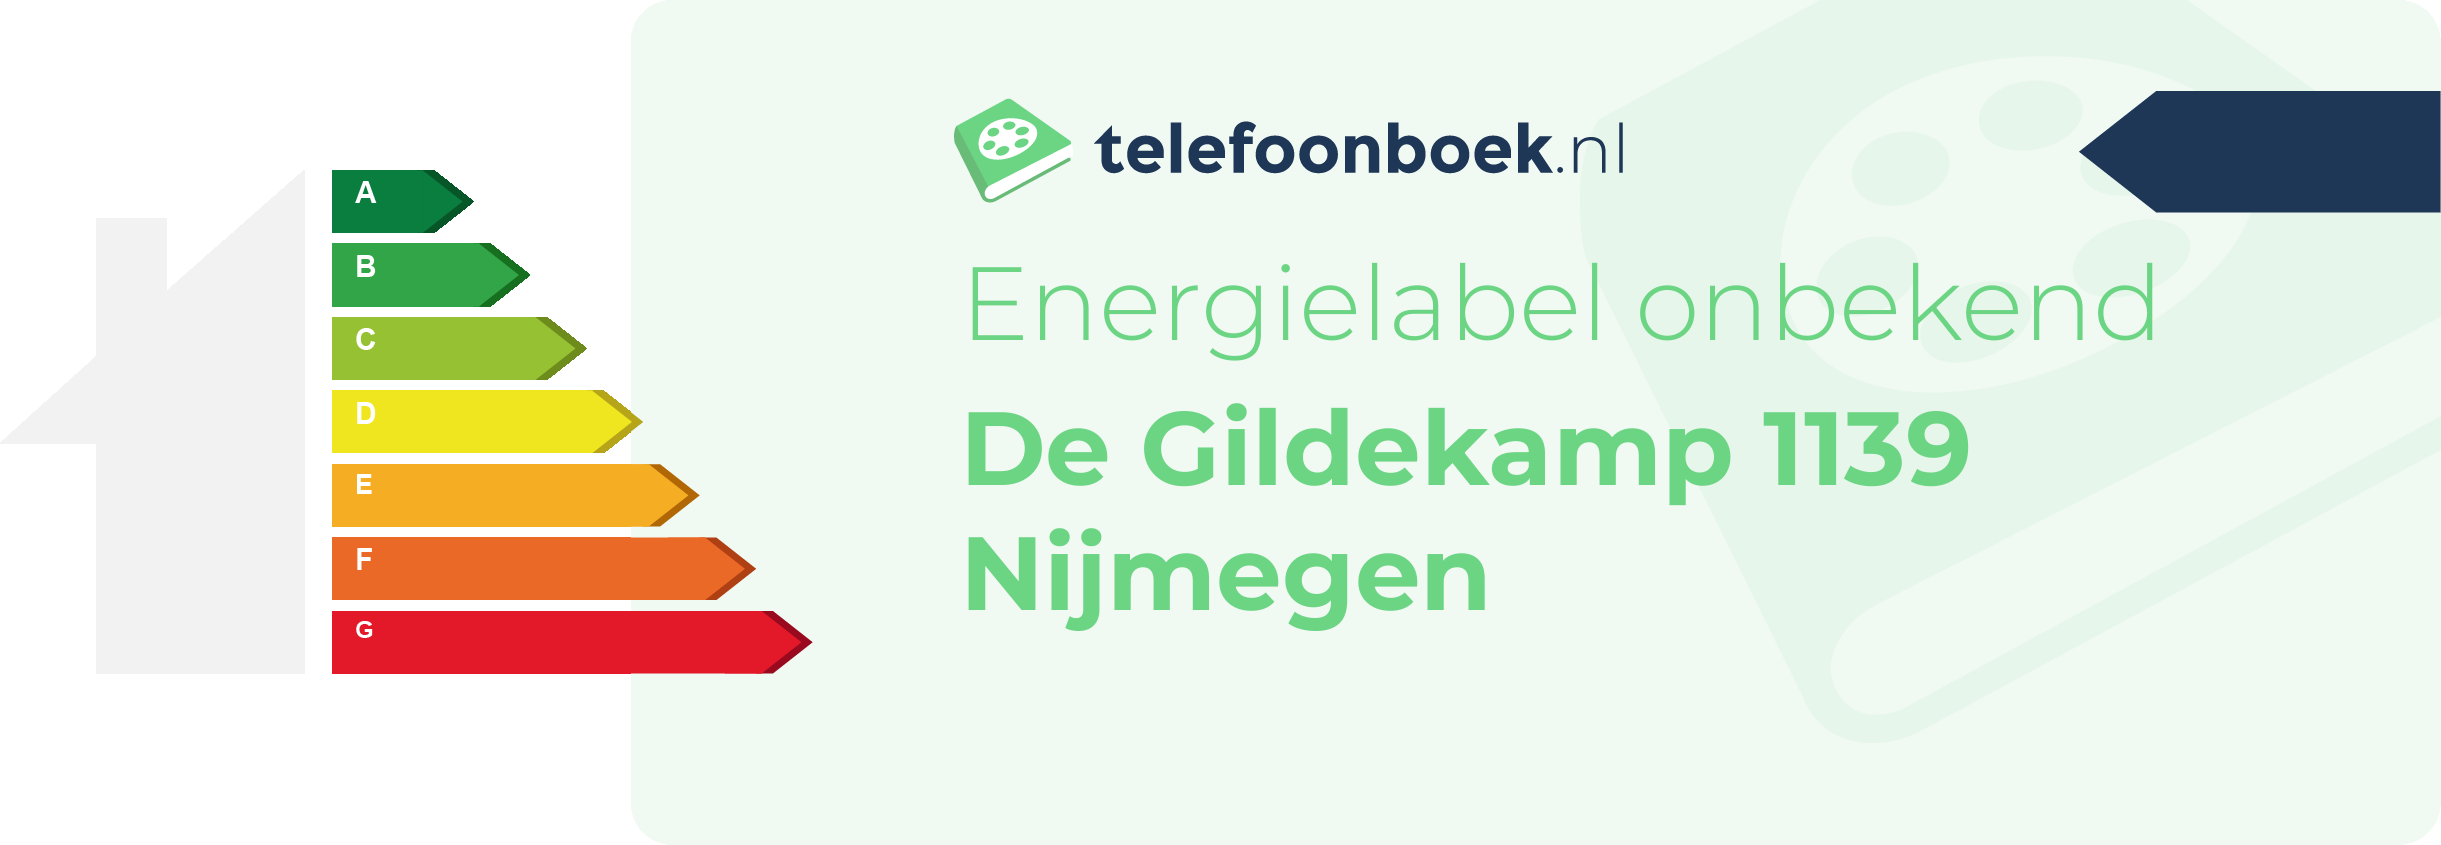 Energielabel De Gildekamp 1139 Nijmegen